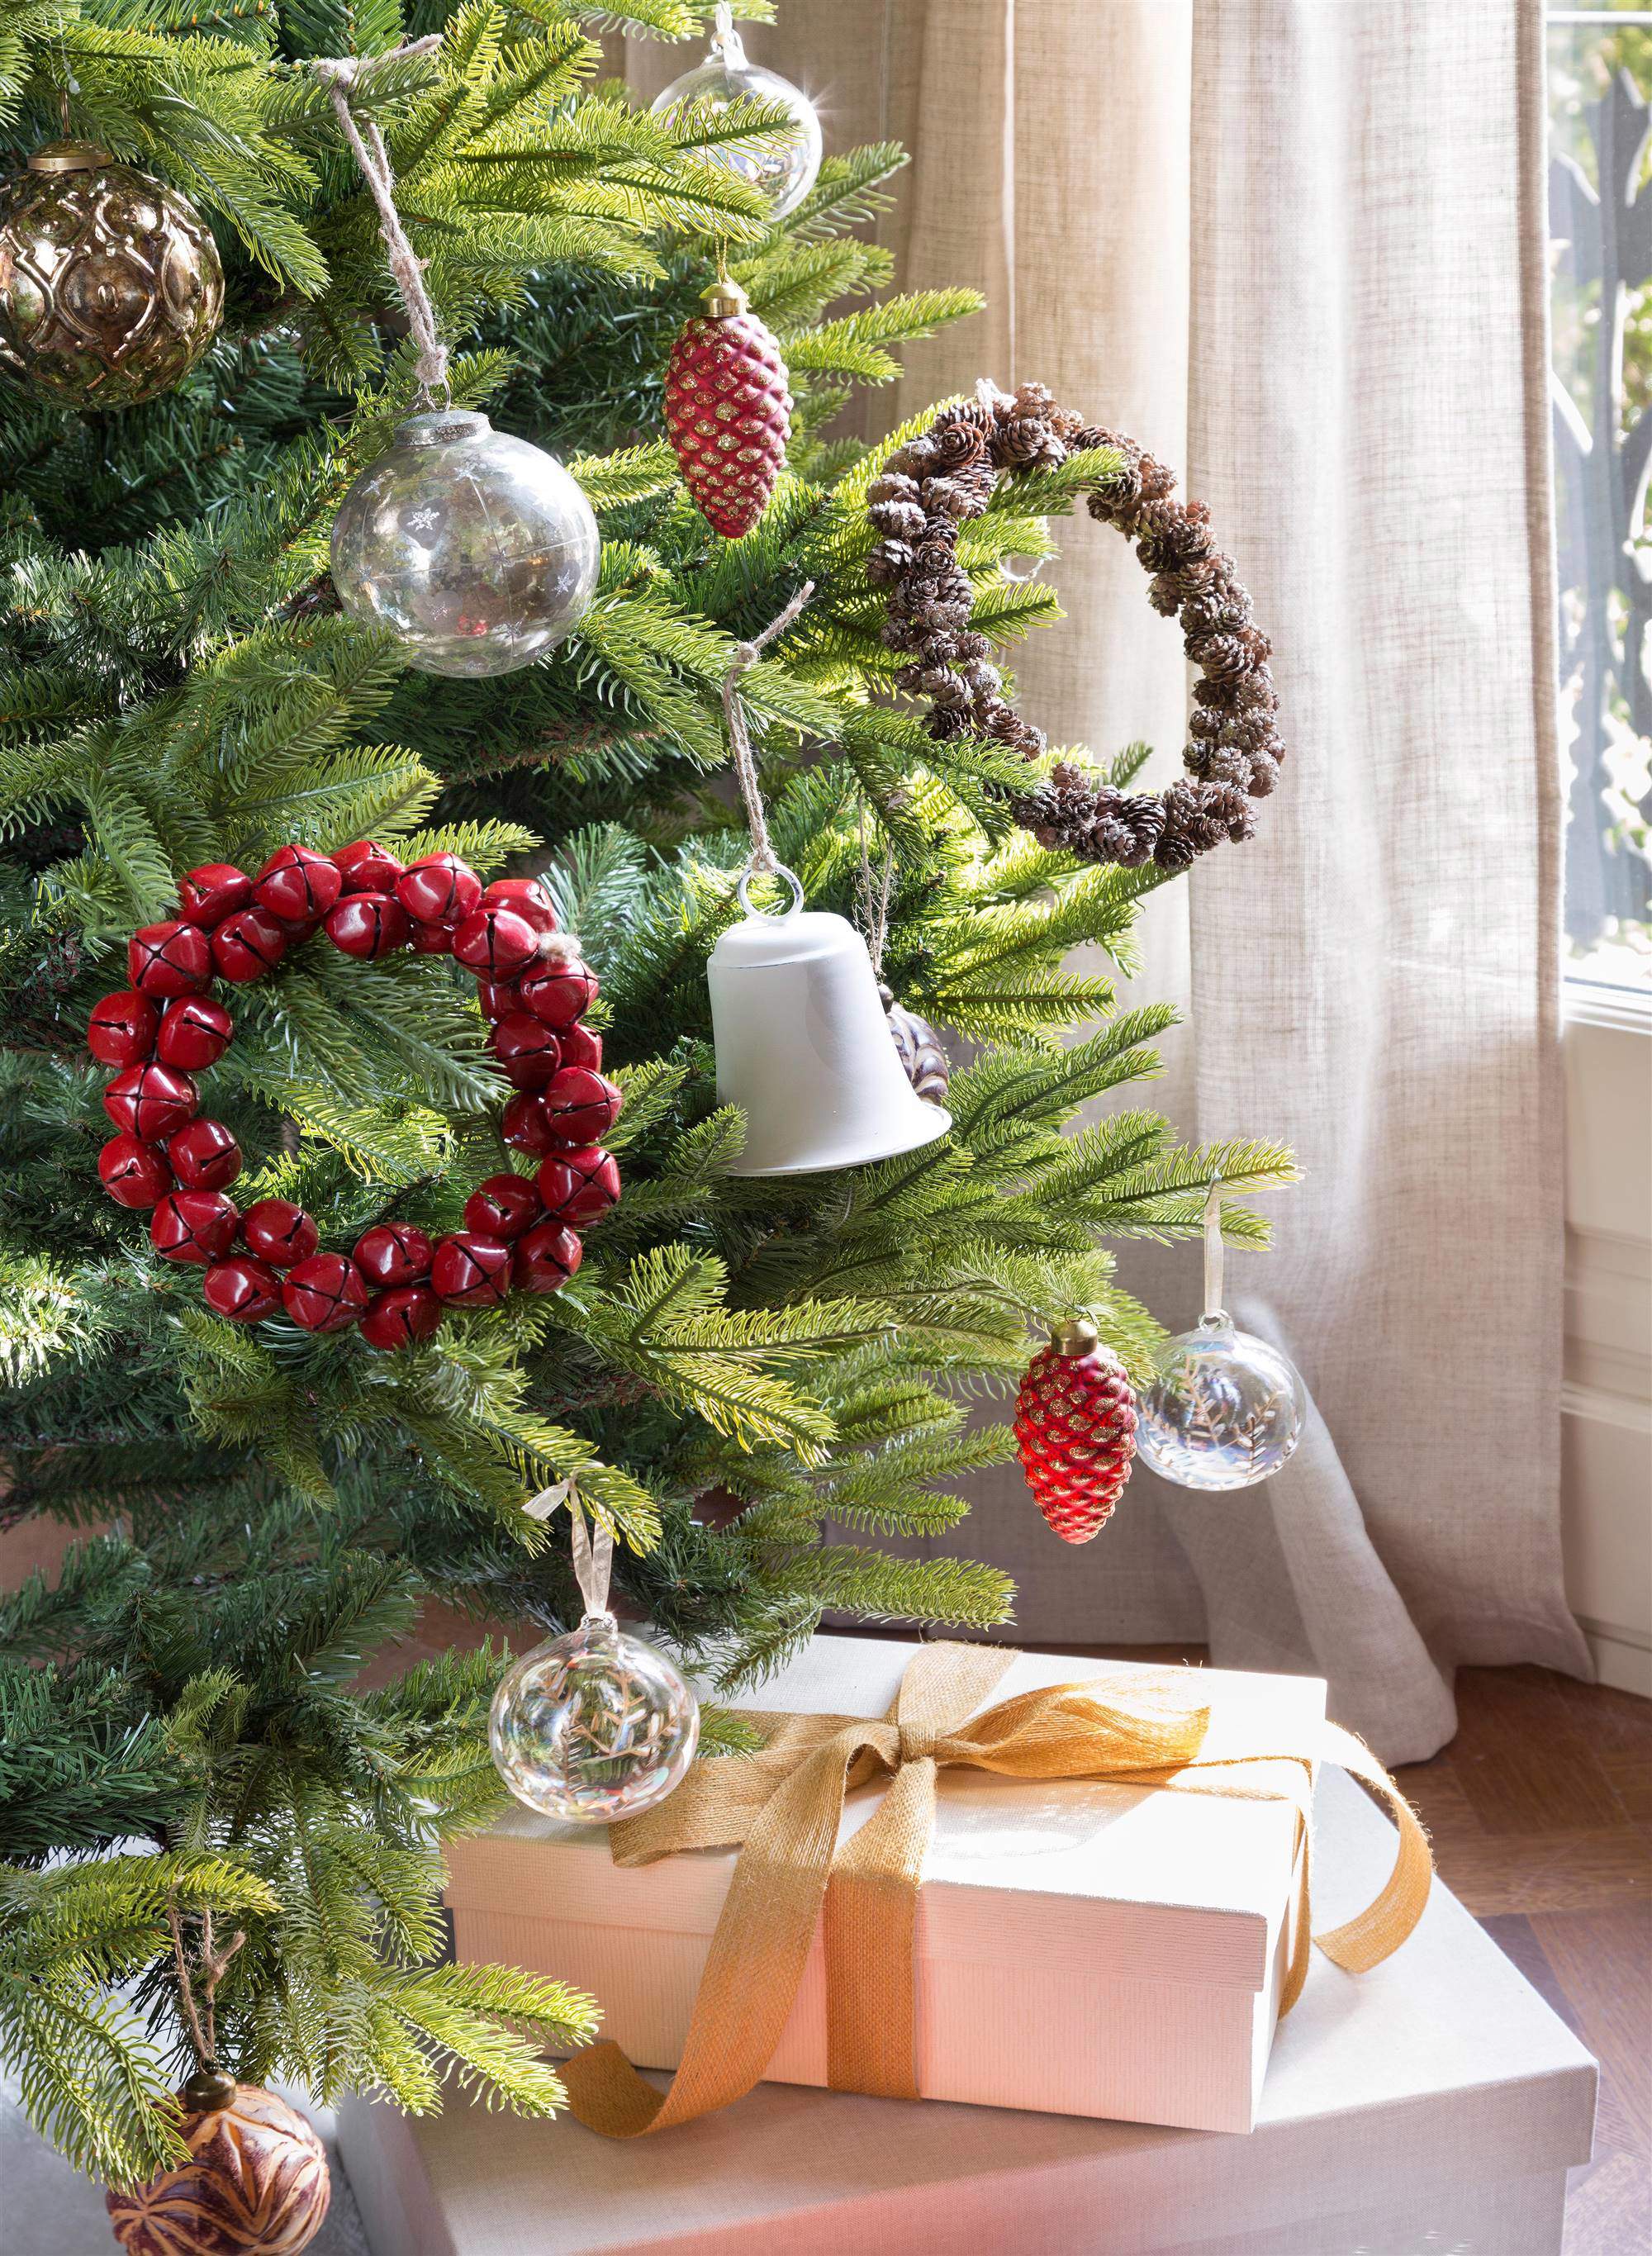 Árbol de Navidad decorado con coronas, campanas, piñas y bolas de cristal.